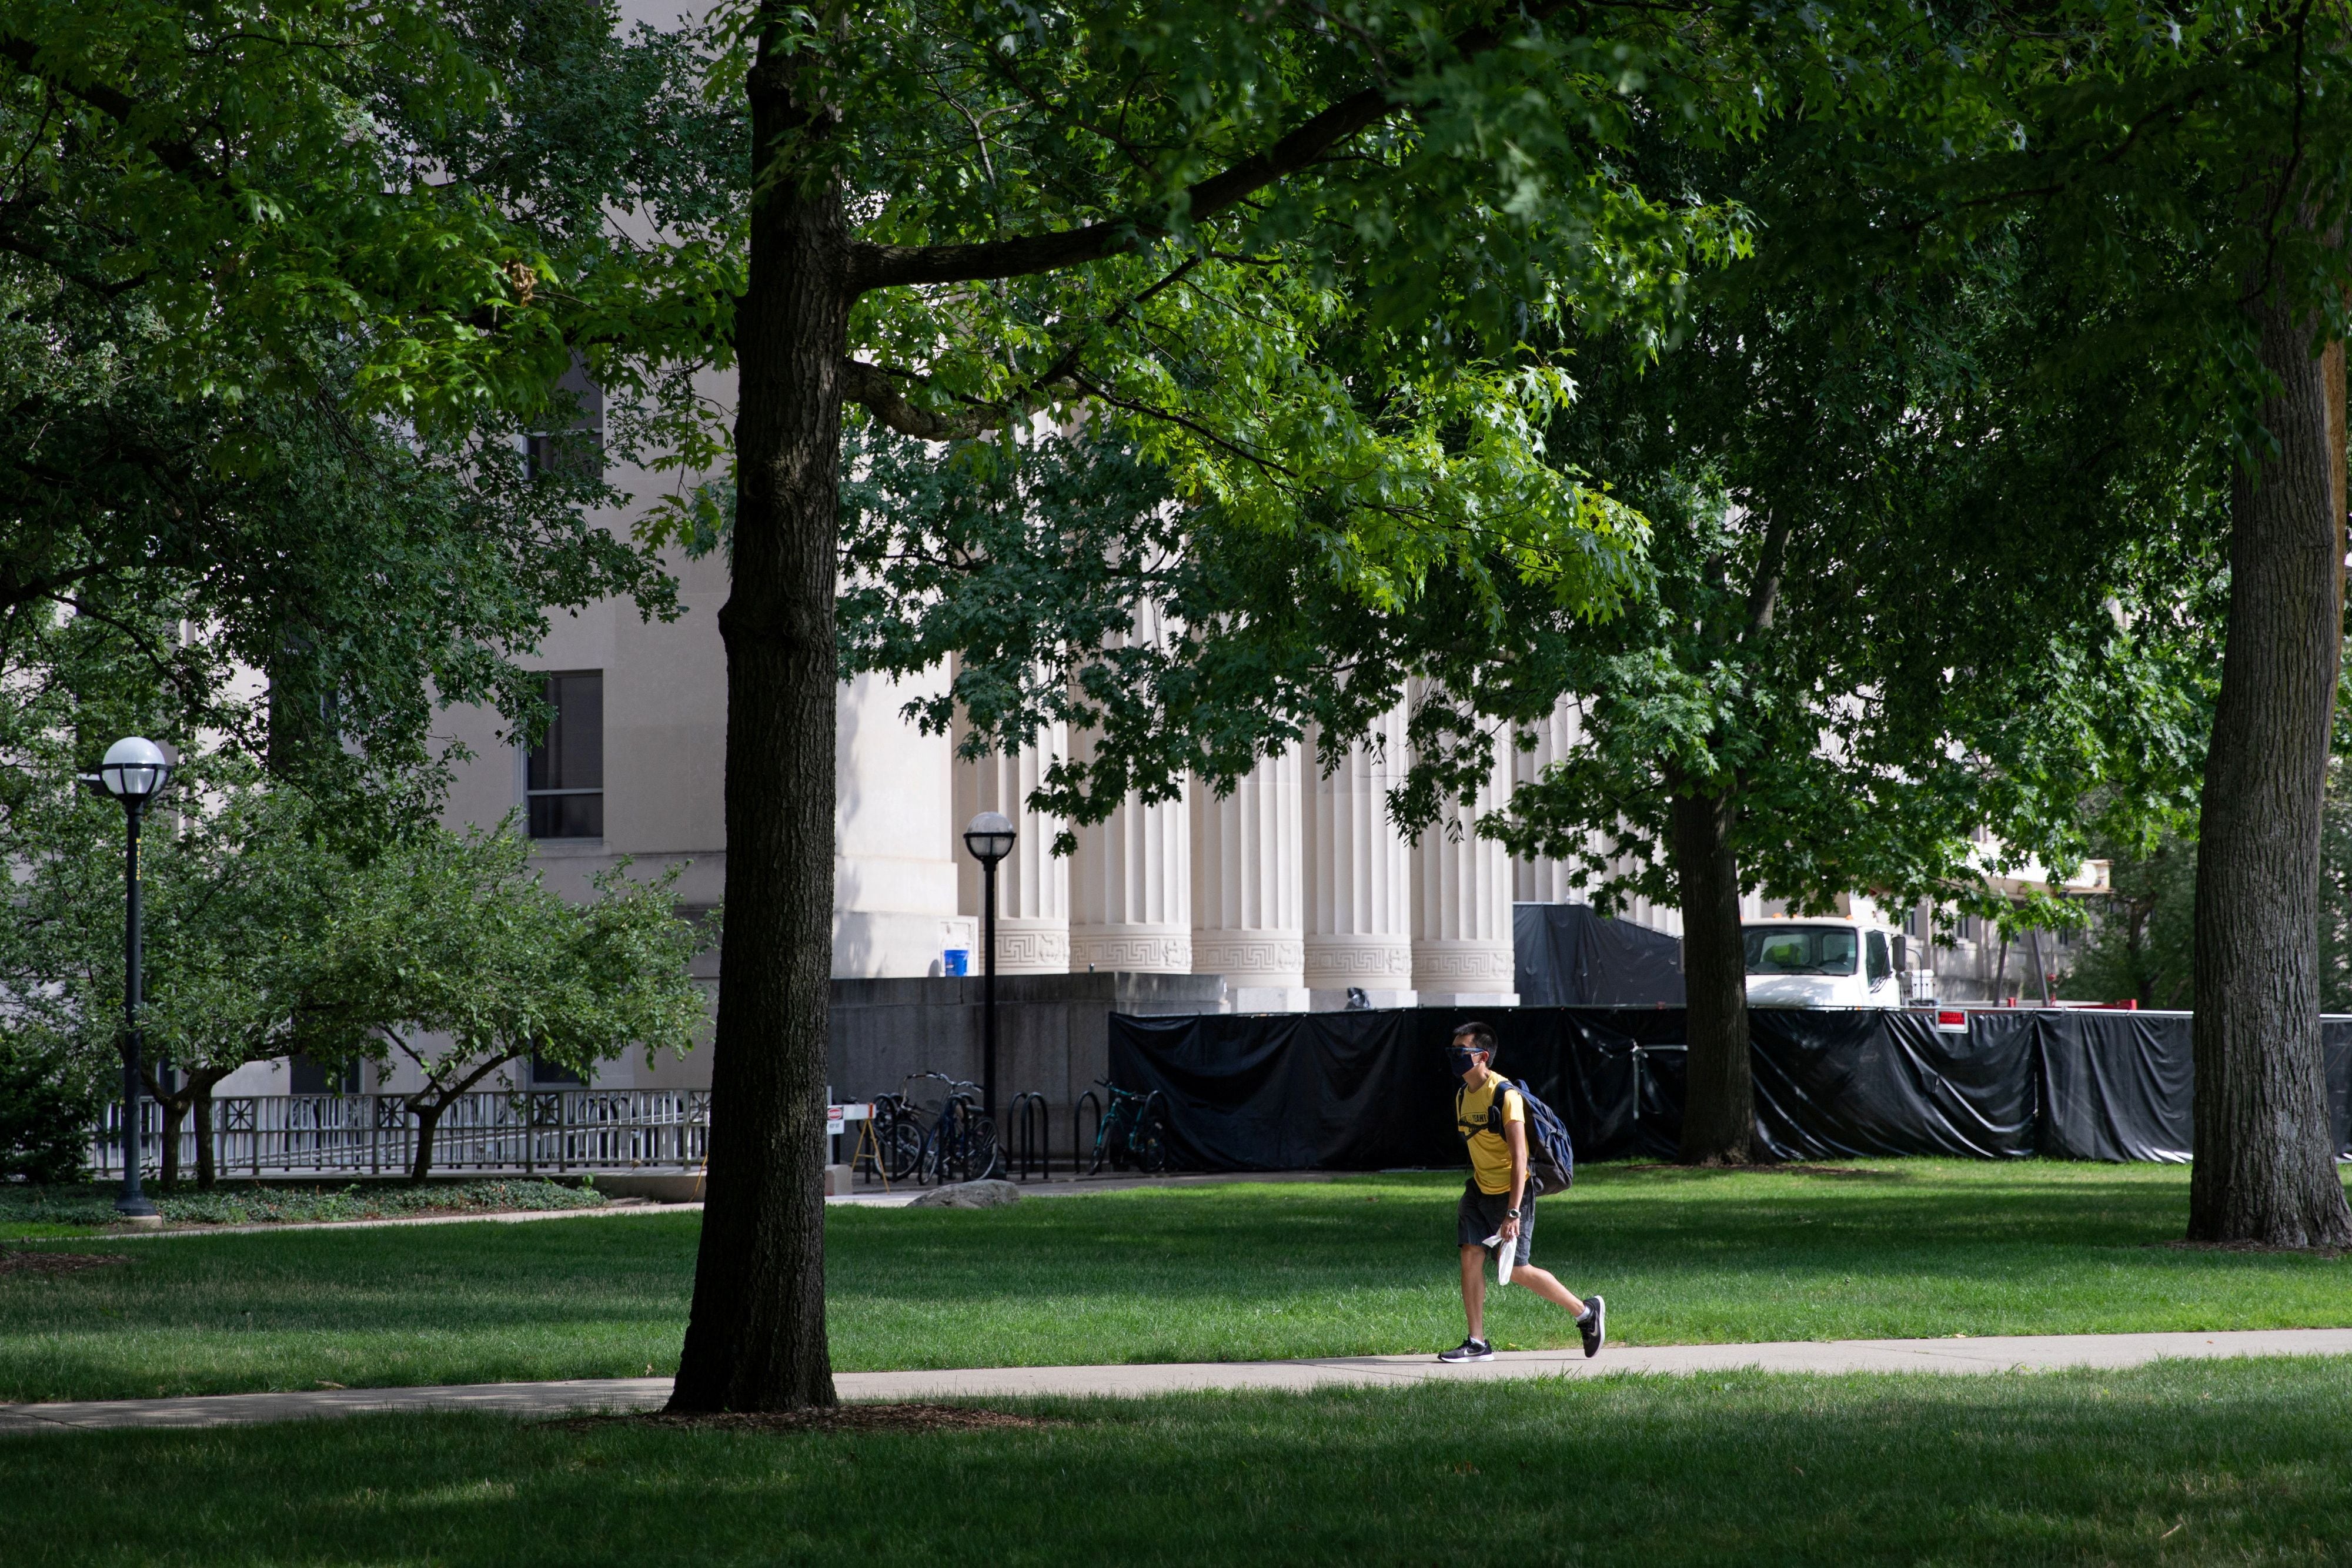 La Universidad de Michigan, situada en Ann Arbor, juega un rol crucial como uno de los principales empleadores y puntos centrales de la vida cultural y económica de la ciudad. (REUTERS/Emily Elconin)